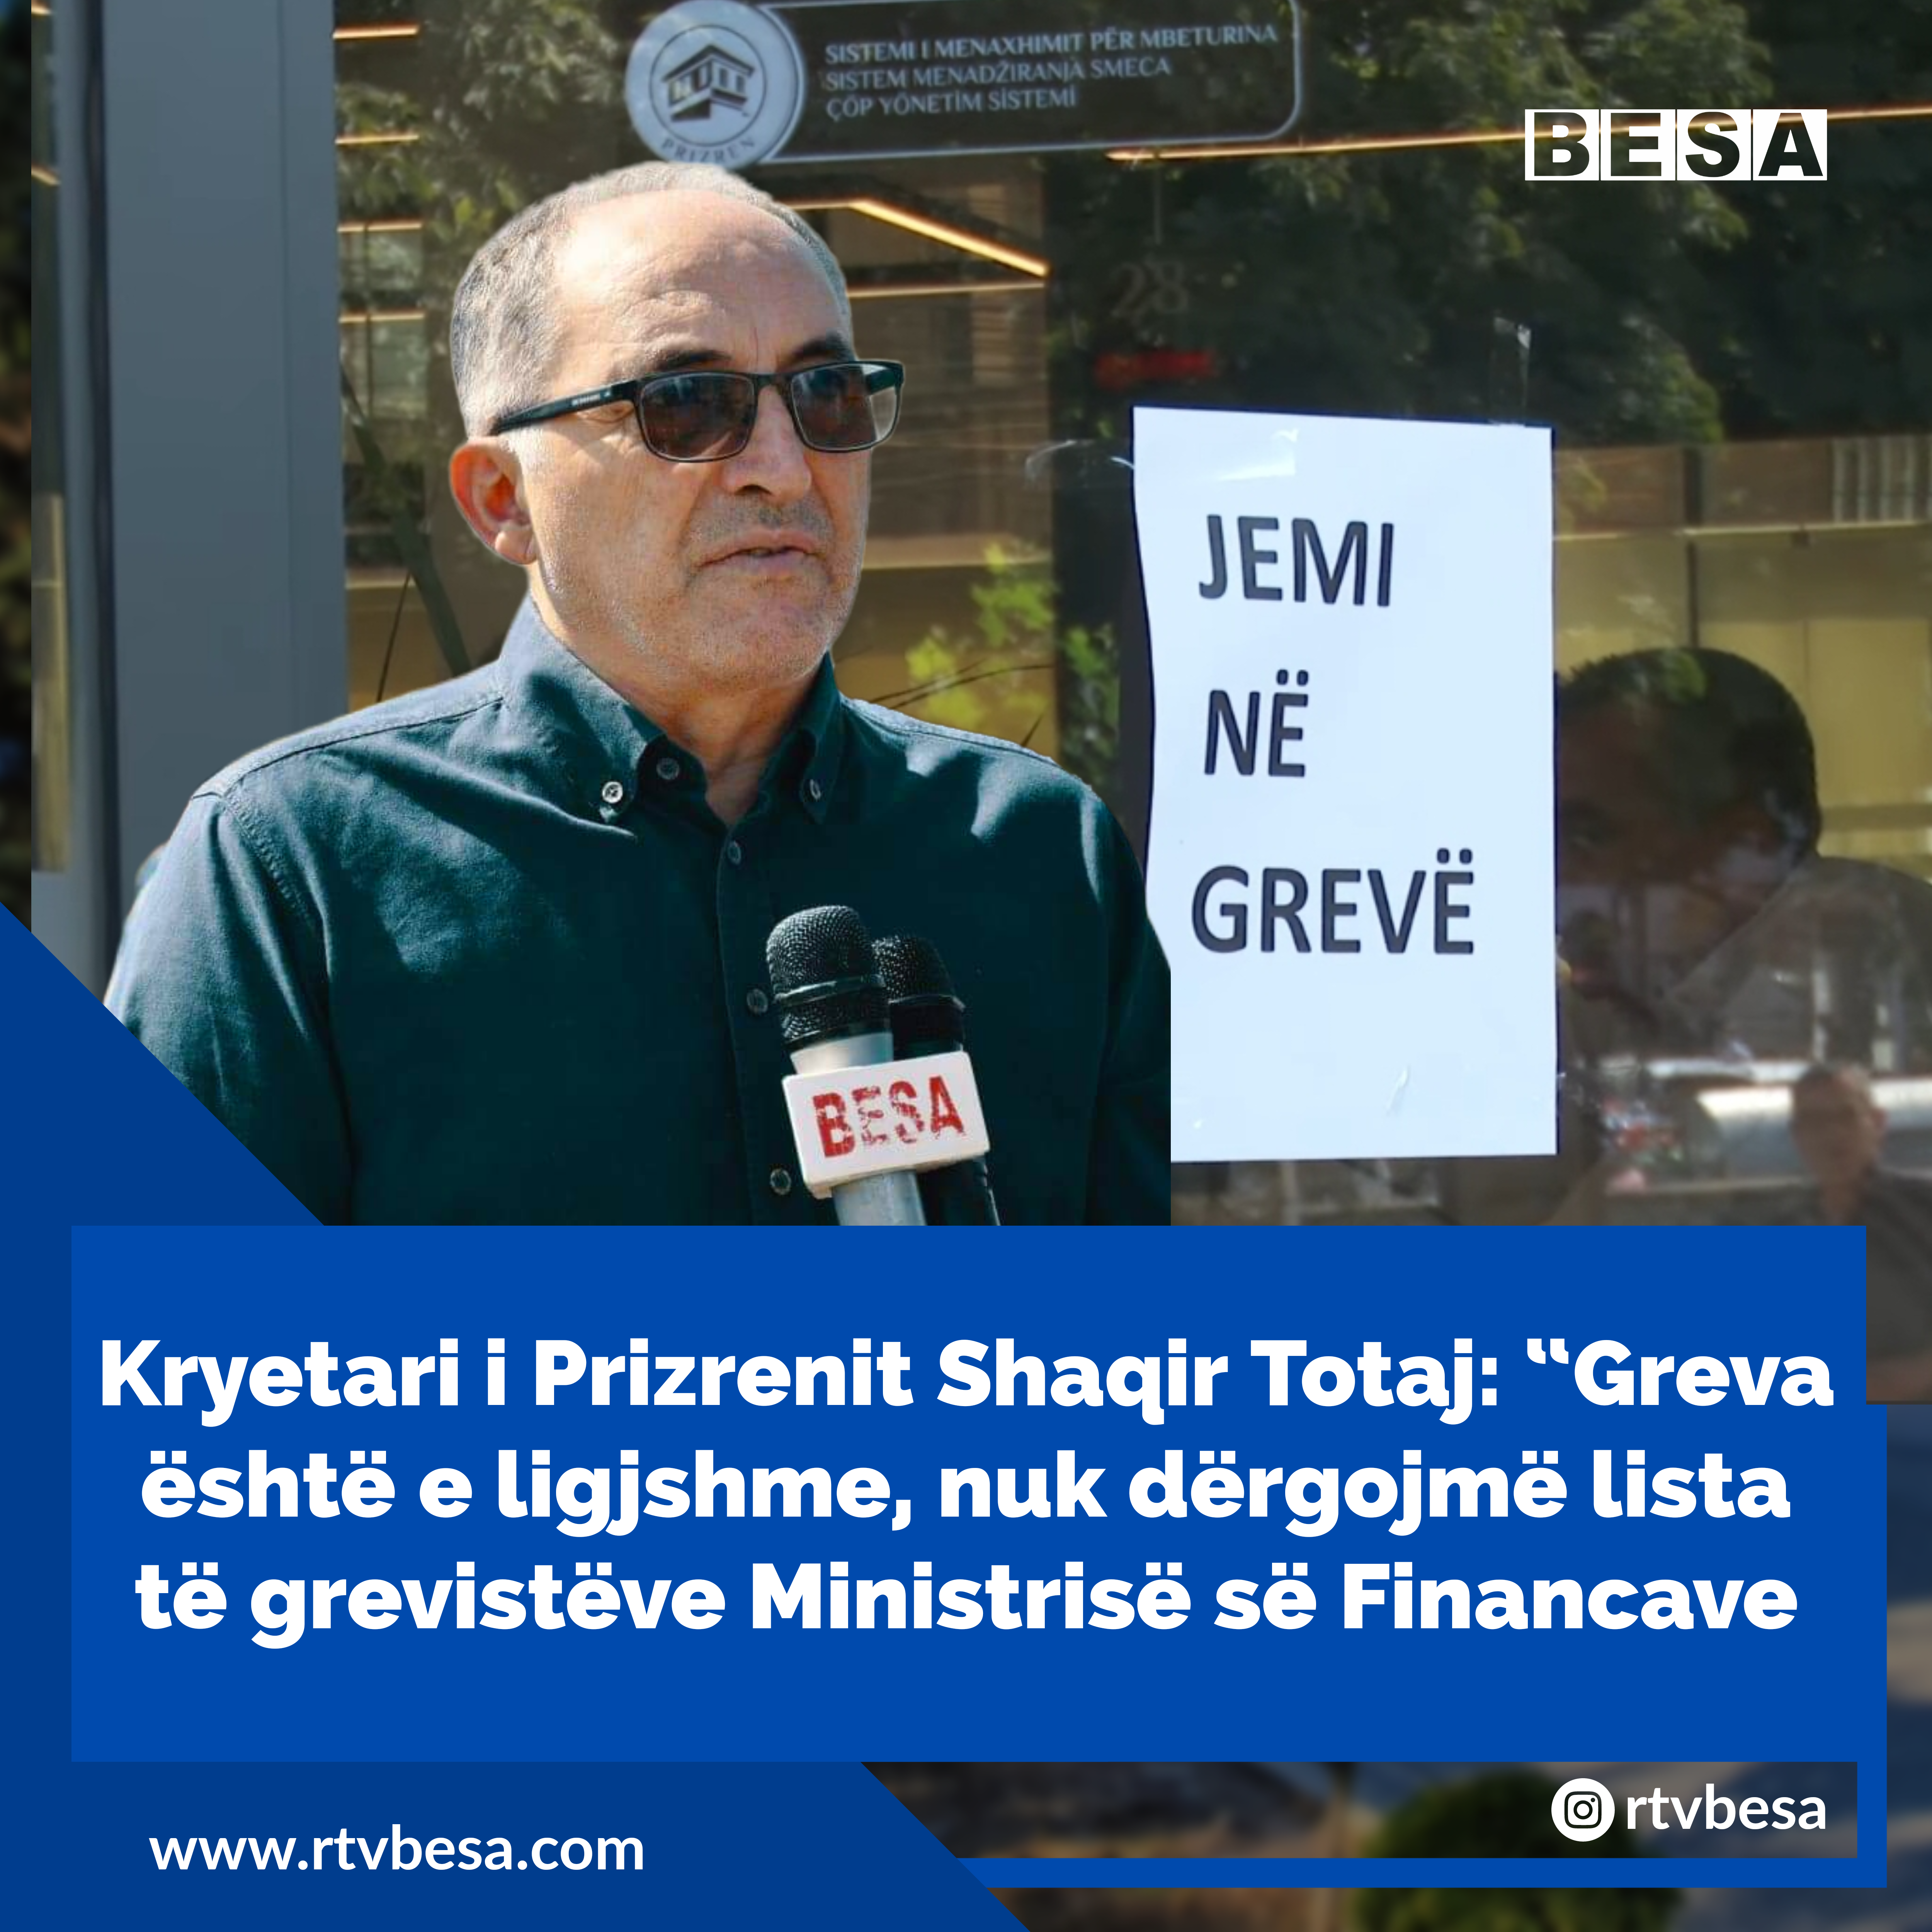 Kryetari i Prizrenit Totaj: “Greva është e ligjshme, nuk dërgojmë lista të grevistëve Ministrisë së Financave